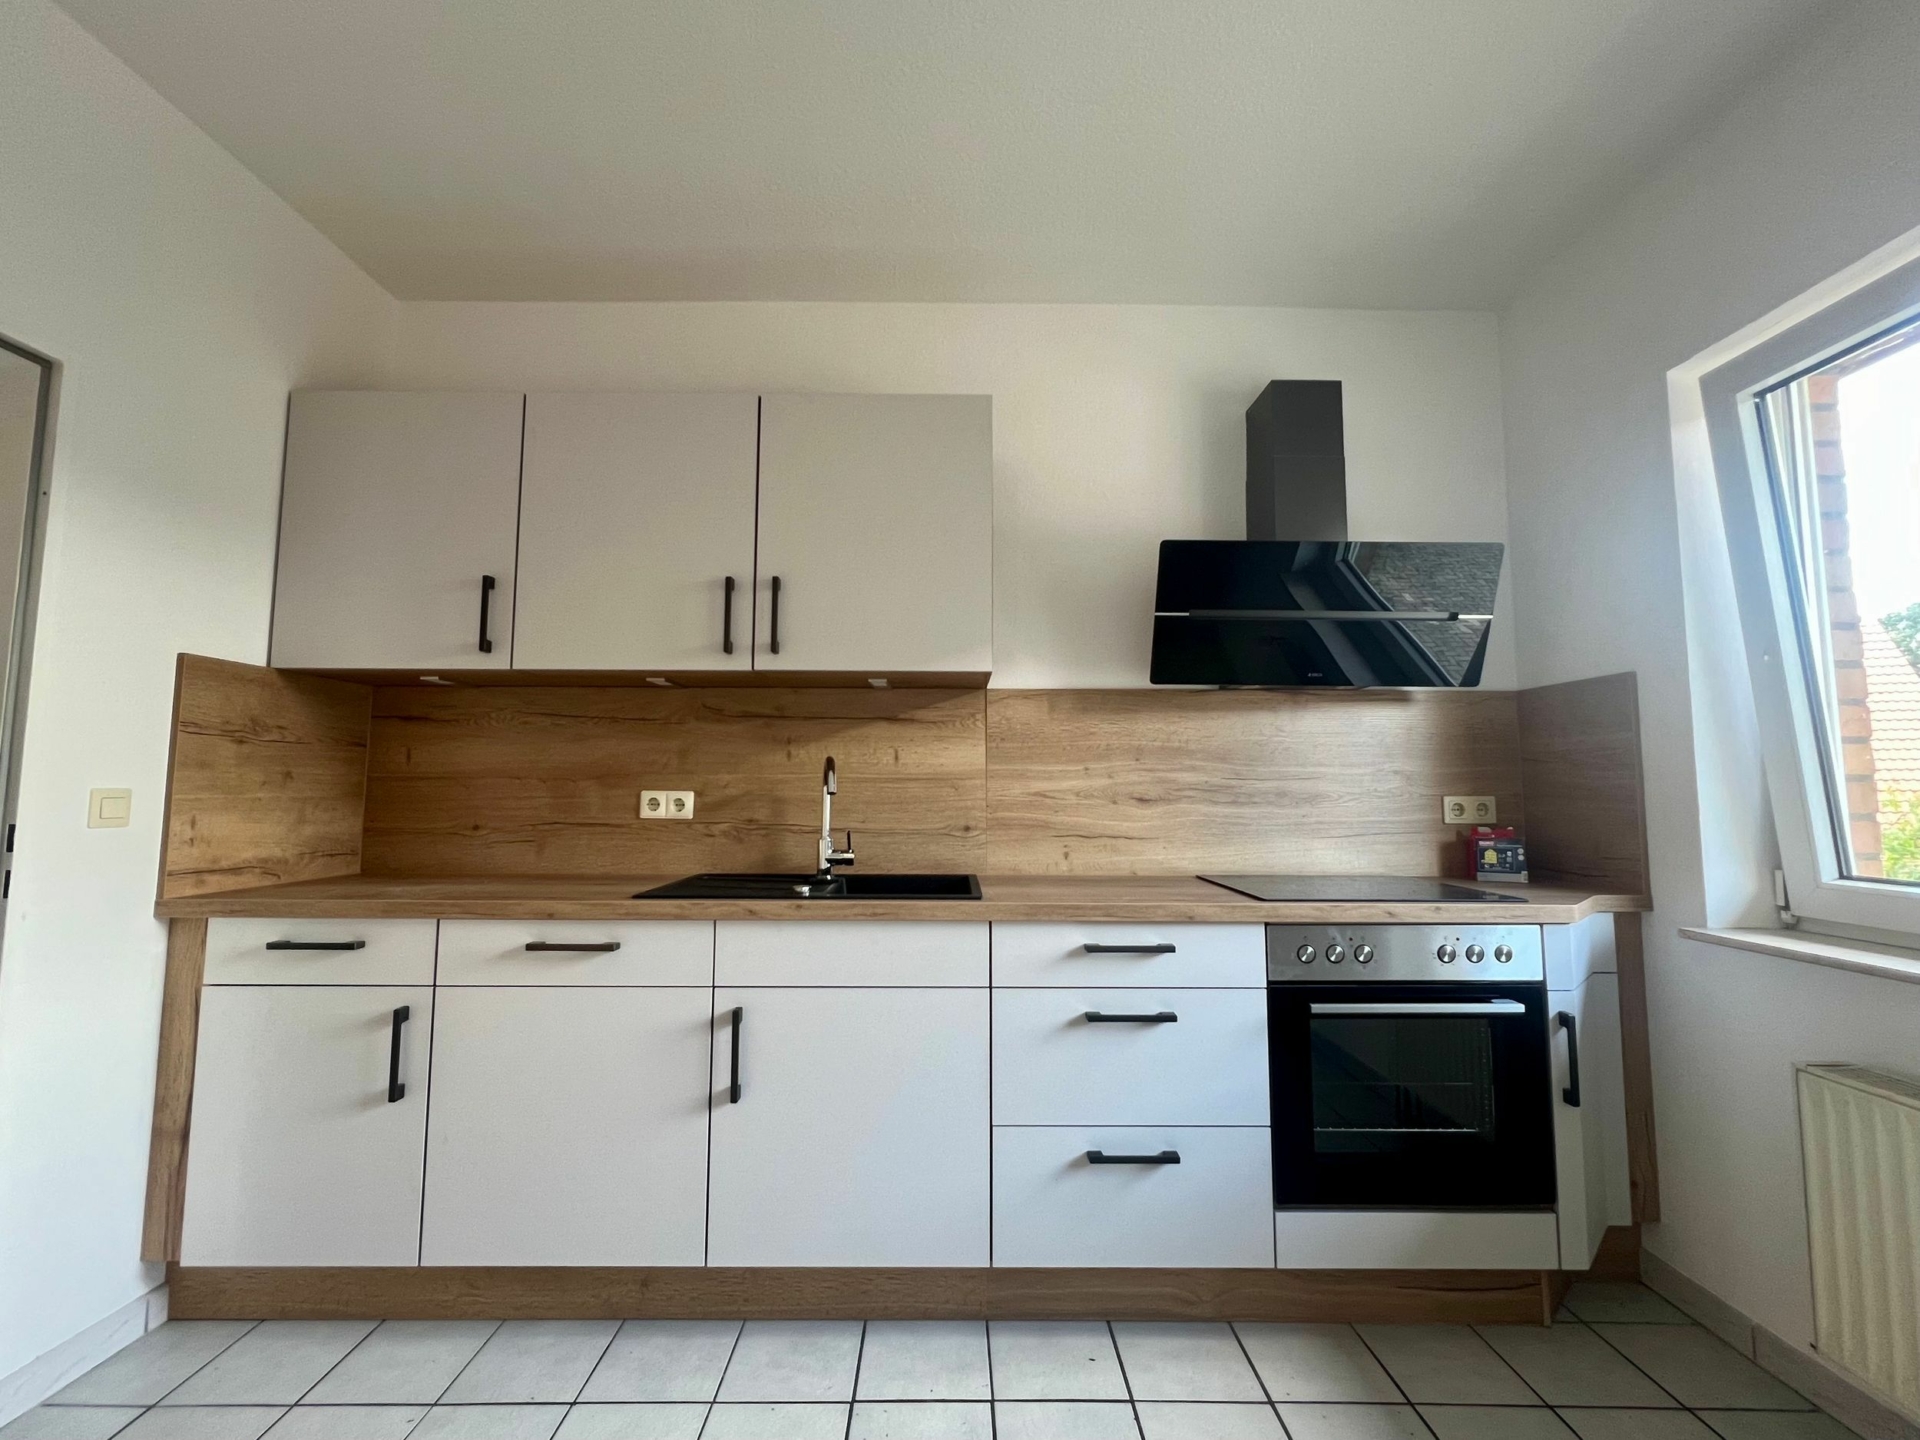 Mit Einbauküche! Renovierte 4-Zimmer-Wohnung in ruhiger Lage von Alfhausen 49594 Alfhausen, Etagenwohnung